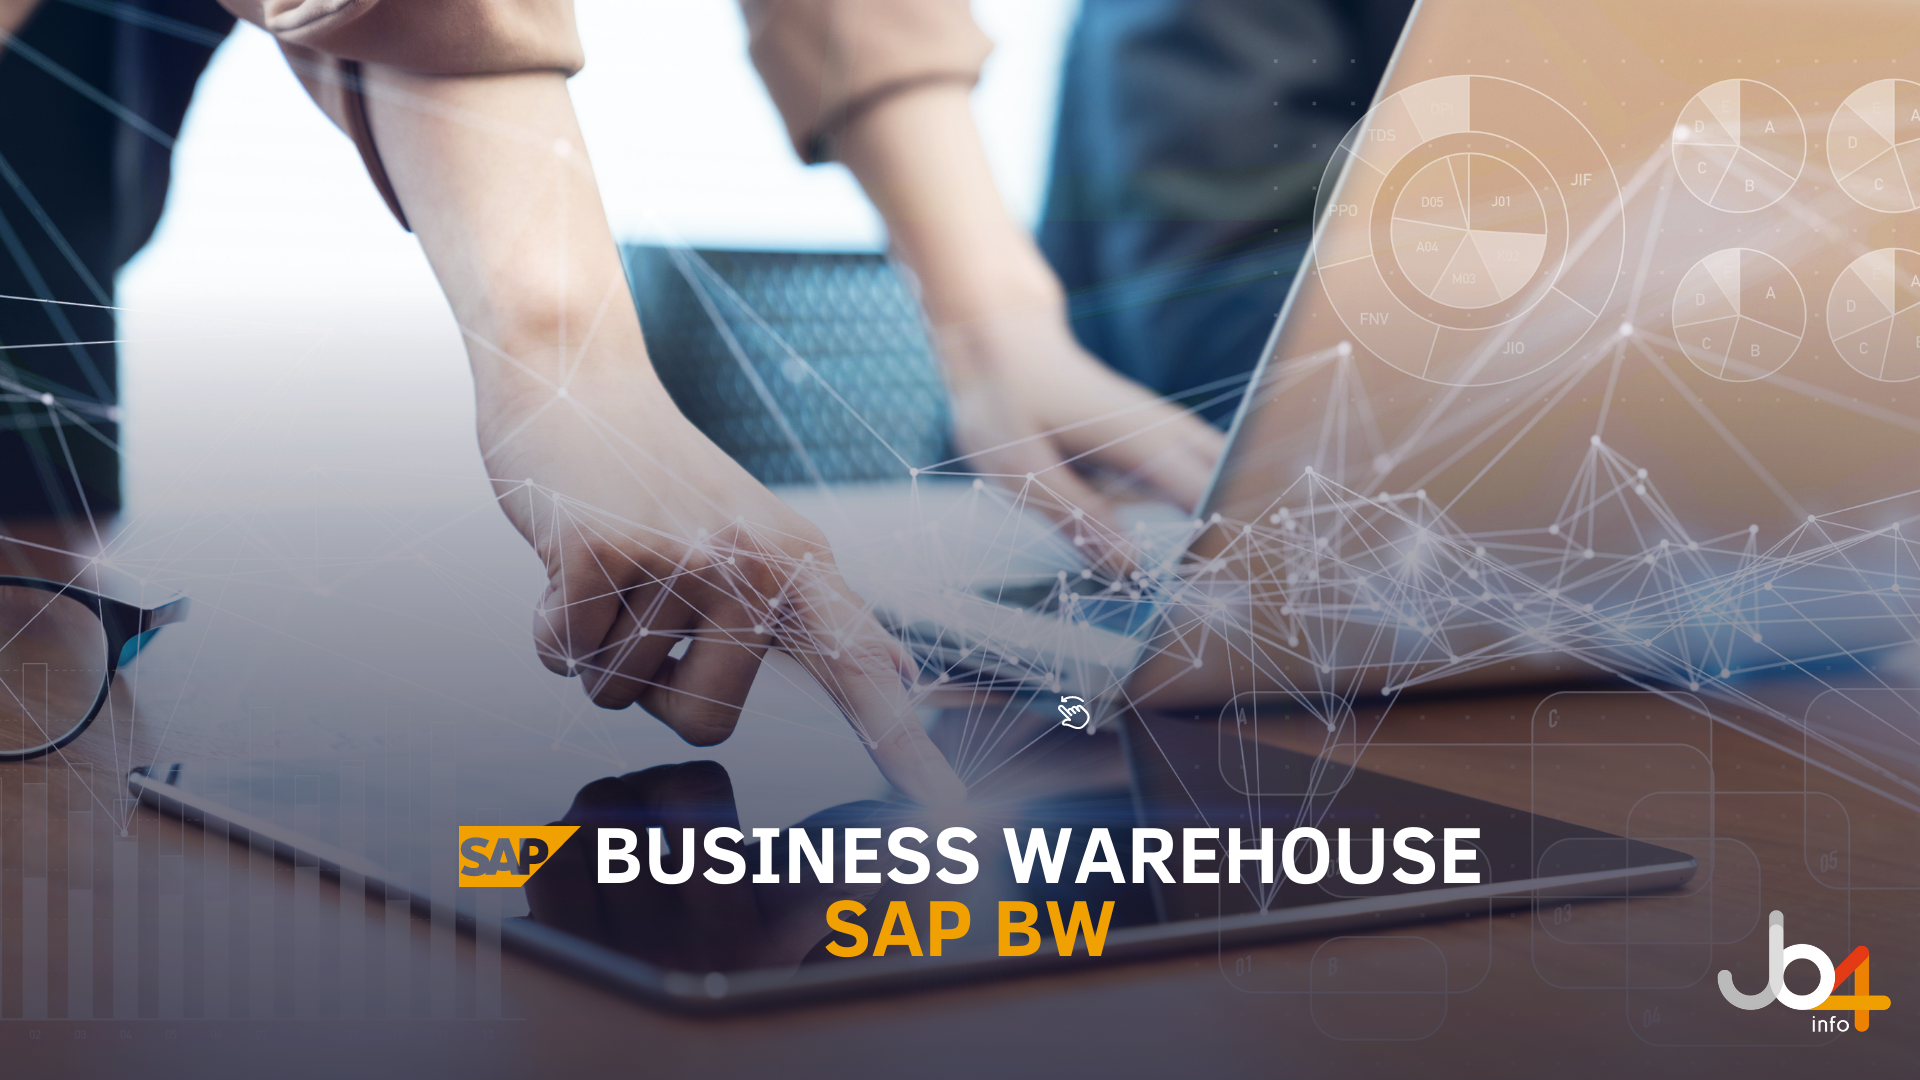 SAP Business Warehouse (BW) ou Armazém de Negócios